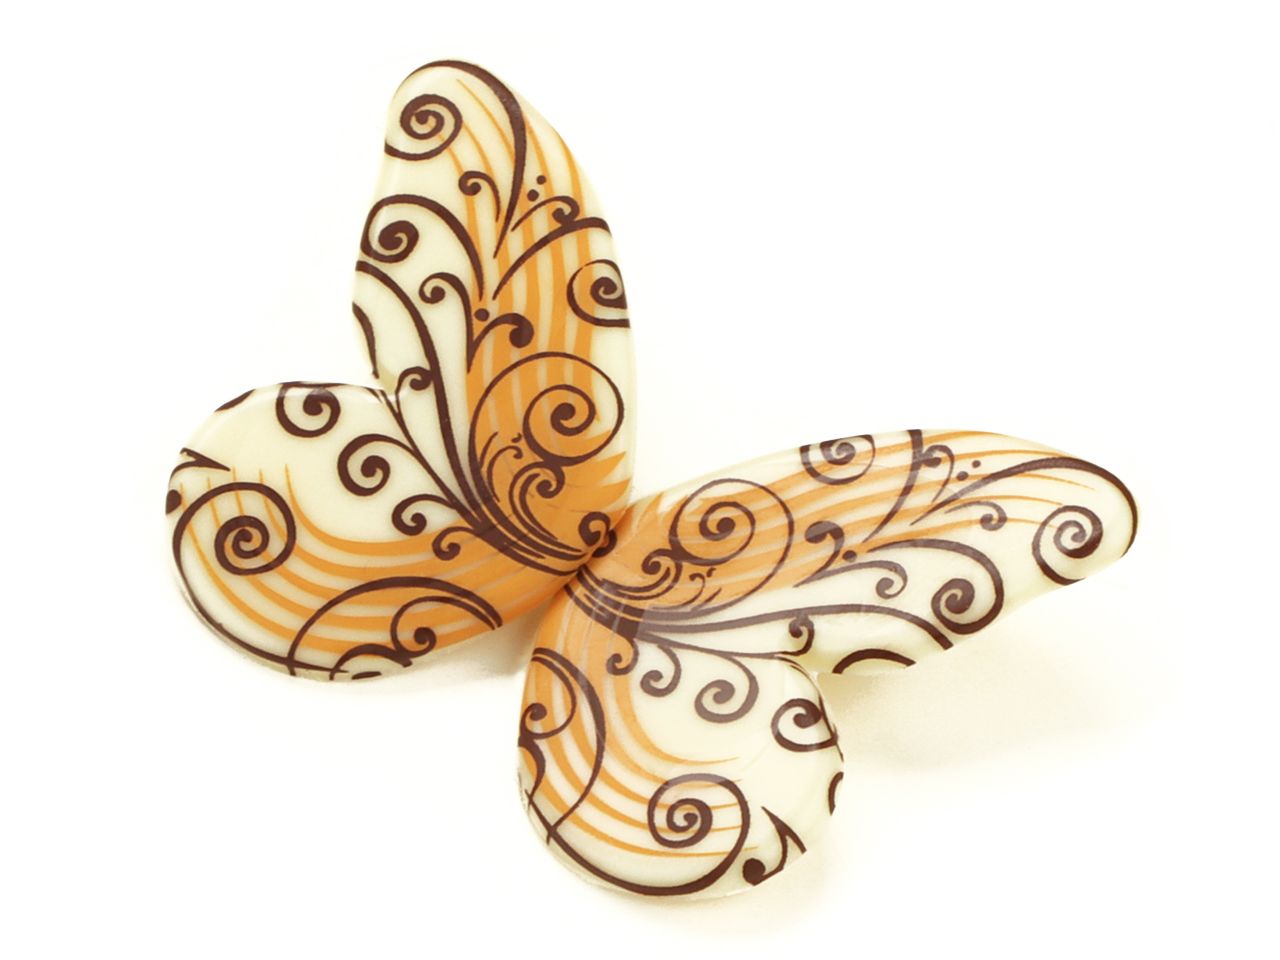 Schoko-Dekor: Schmetterling, weiße Schokolade, 1 Folie/30 halbe Falter á 40 mm x 25 mm